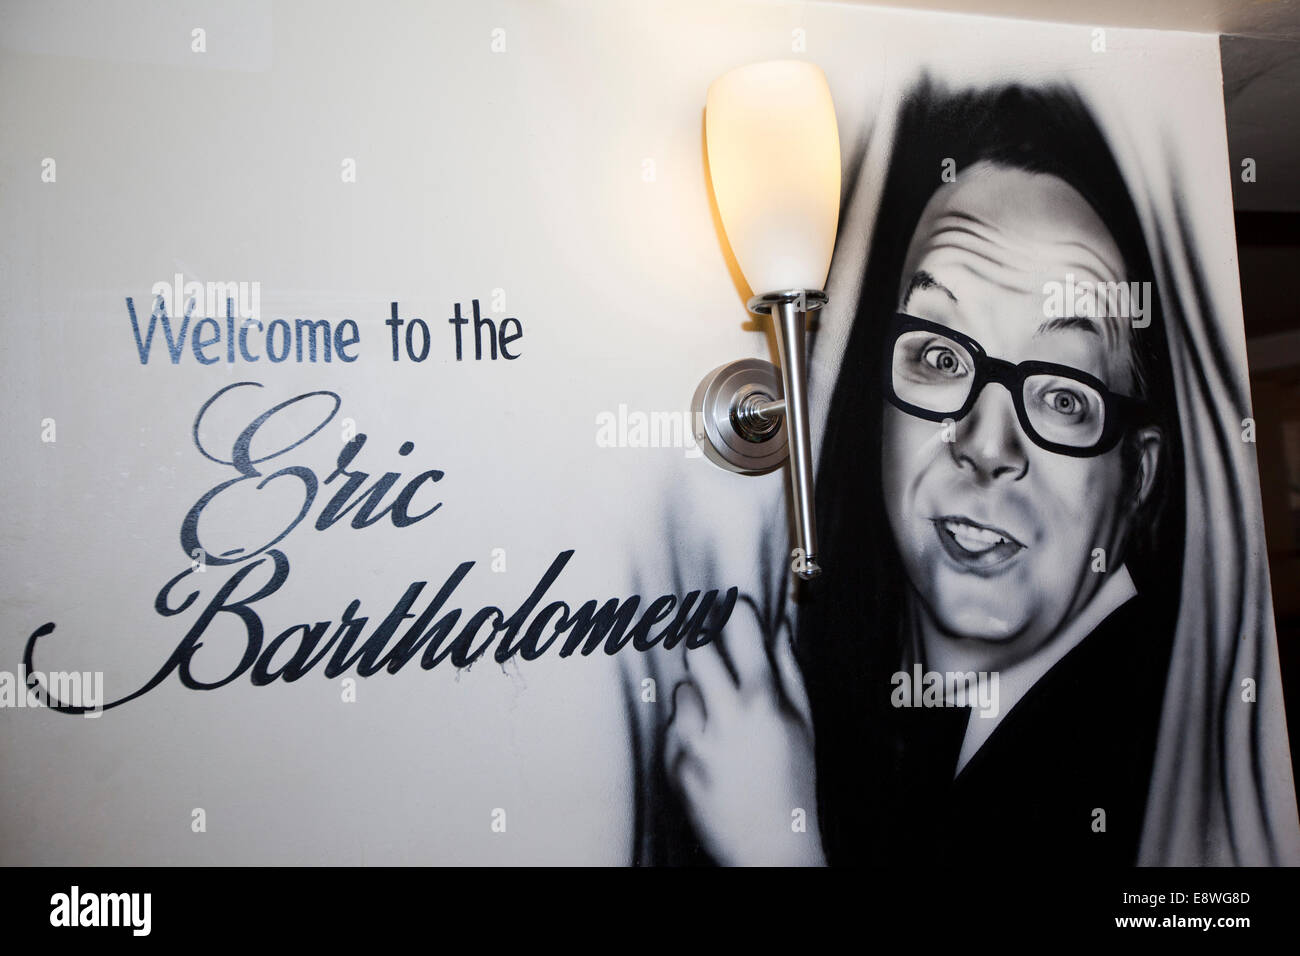 UK, England, Lancashire, Morecambe, ‘Welcome to the Eric Bartholomew’ airbrushed portrait sign in pub Stock Photo